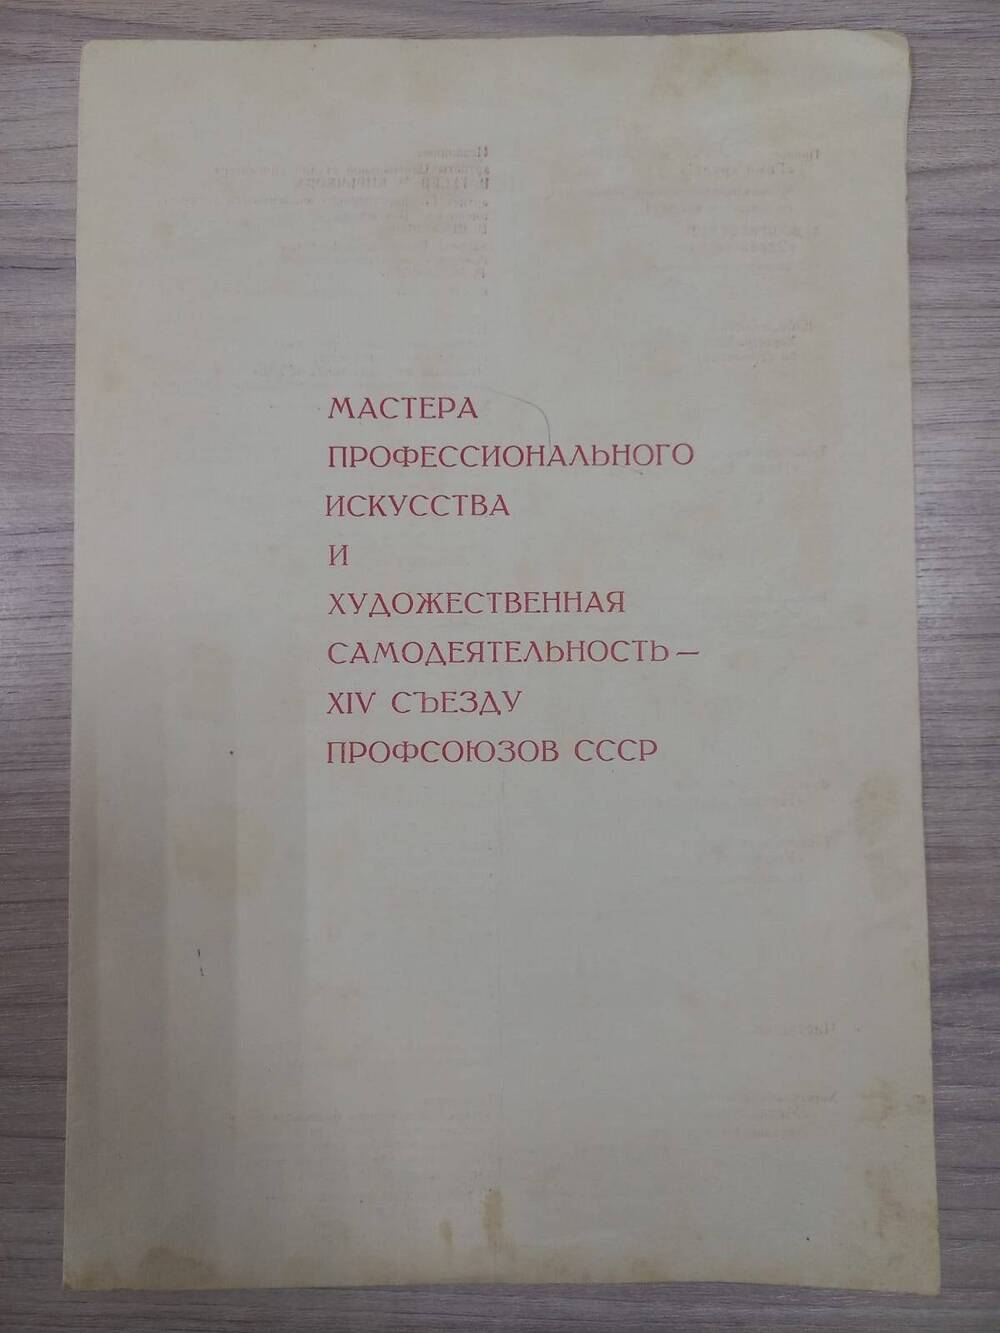 Документ.  Программа концерта  художественной самодеятельности  15   съезду профсоюзов СССР